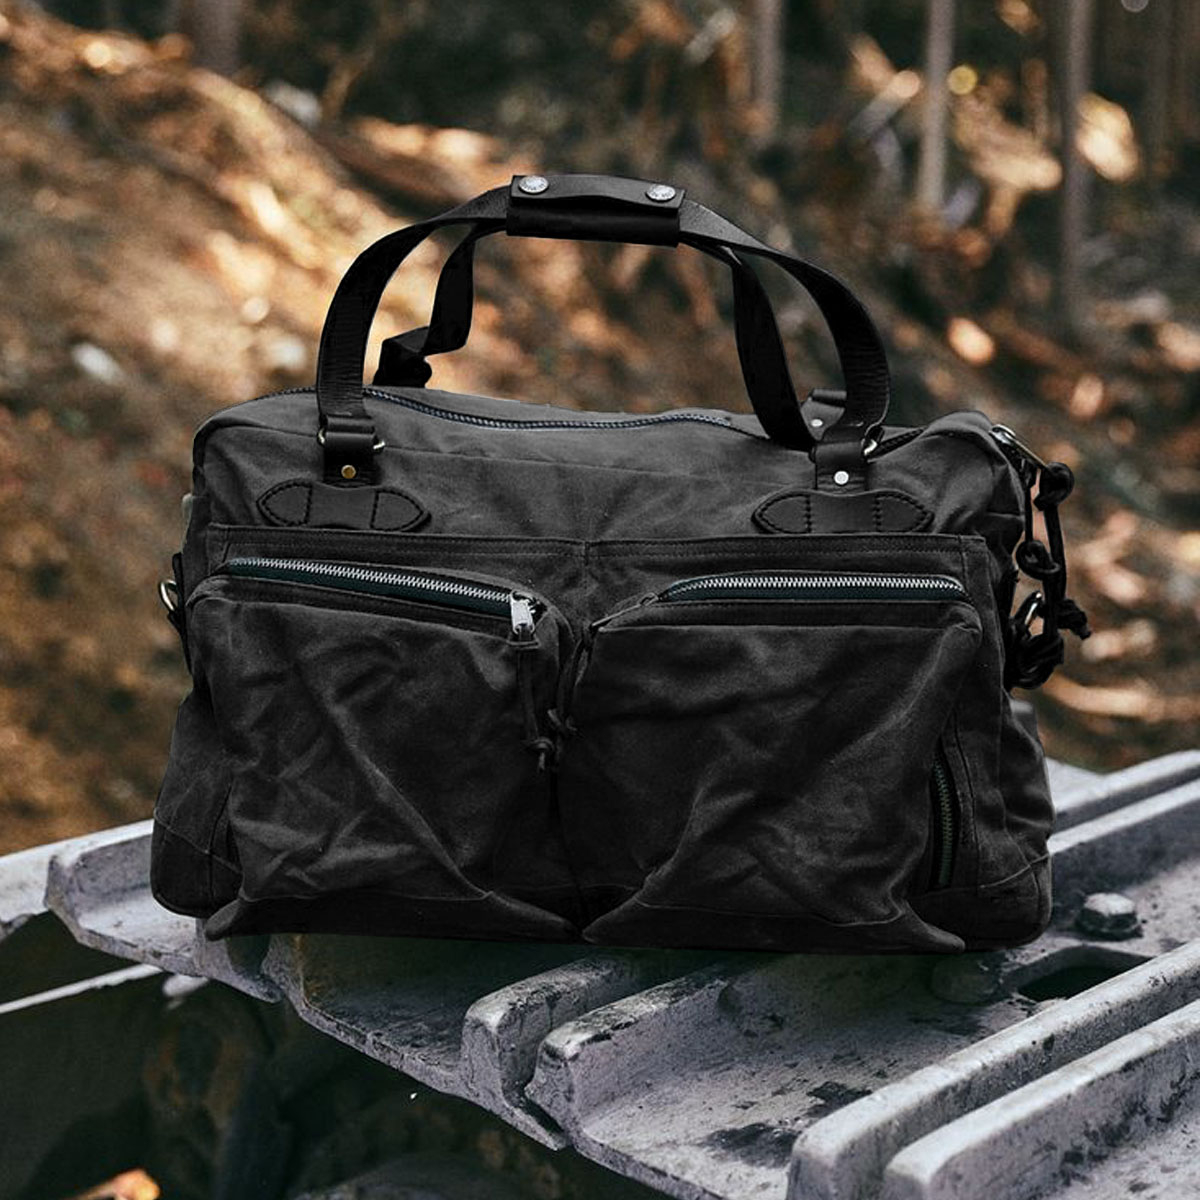 Filson 48-Hour Tin Cloth Duffle Bag Black, een robuuste reistas met grote vakken voor een lang weekend